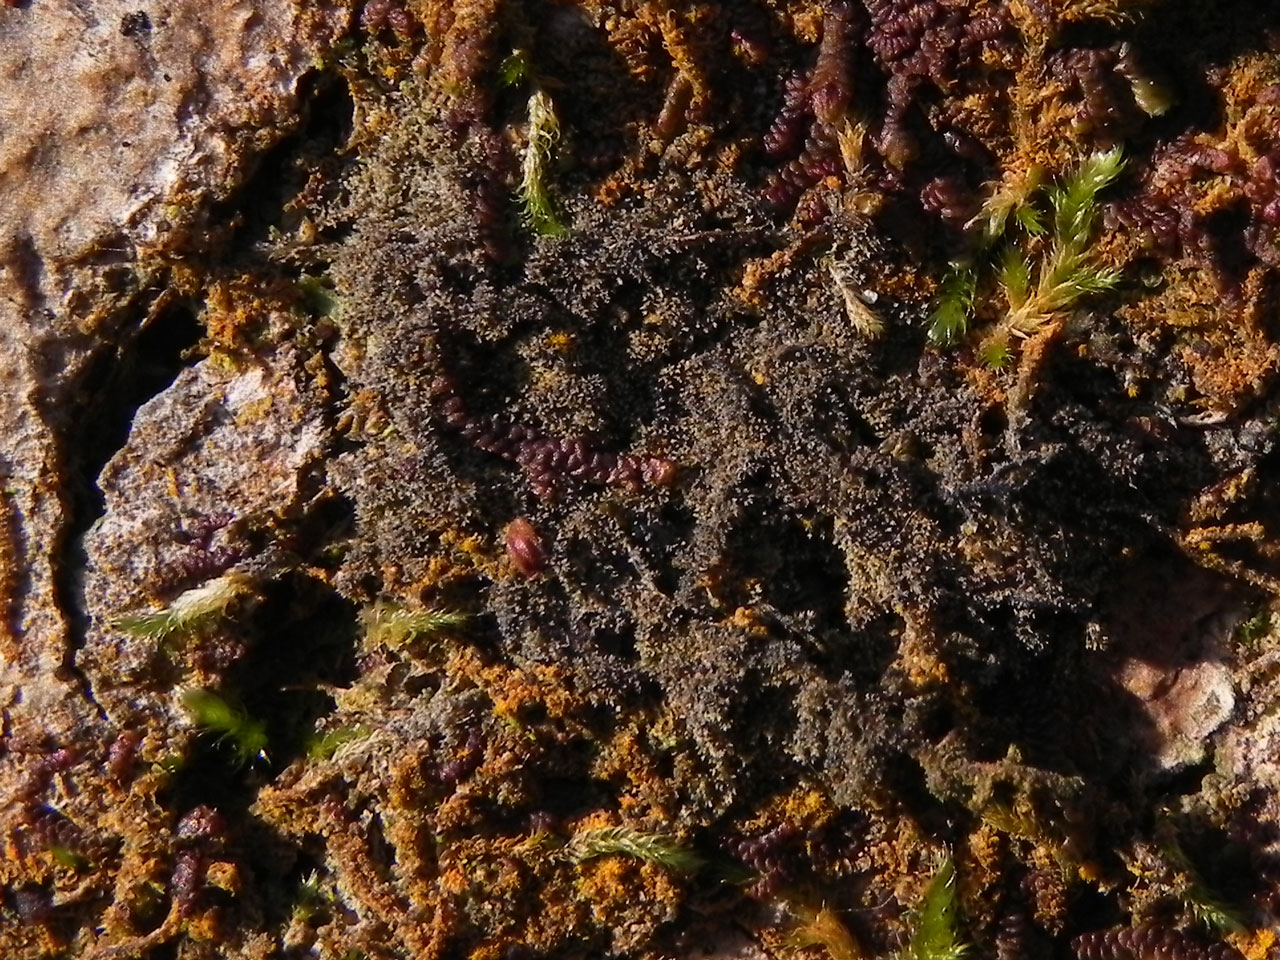 Porina coralloidea, Millook, North Cornwall